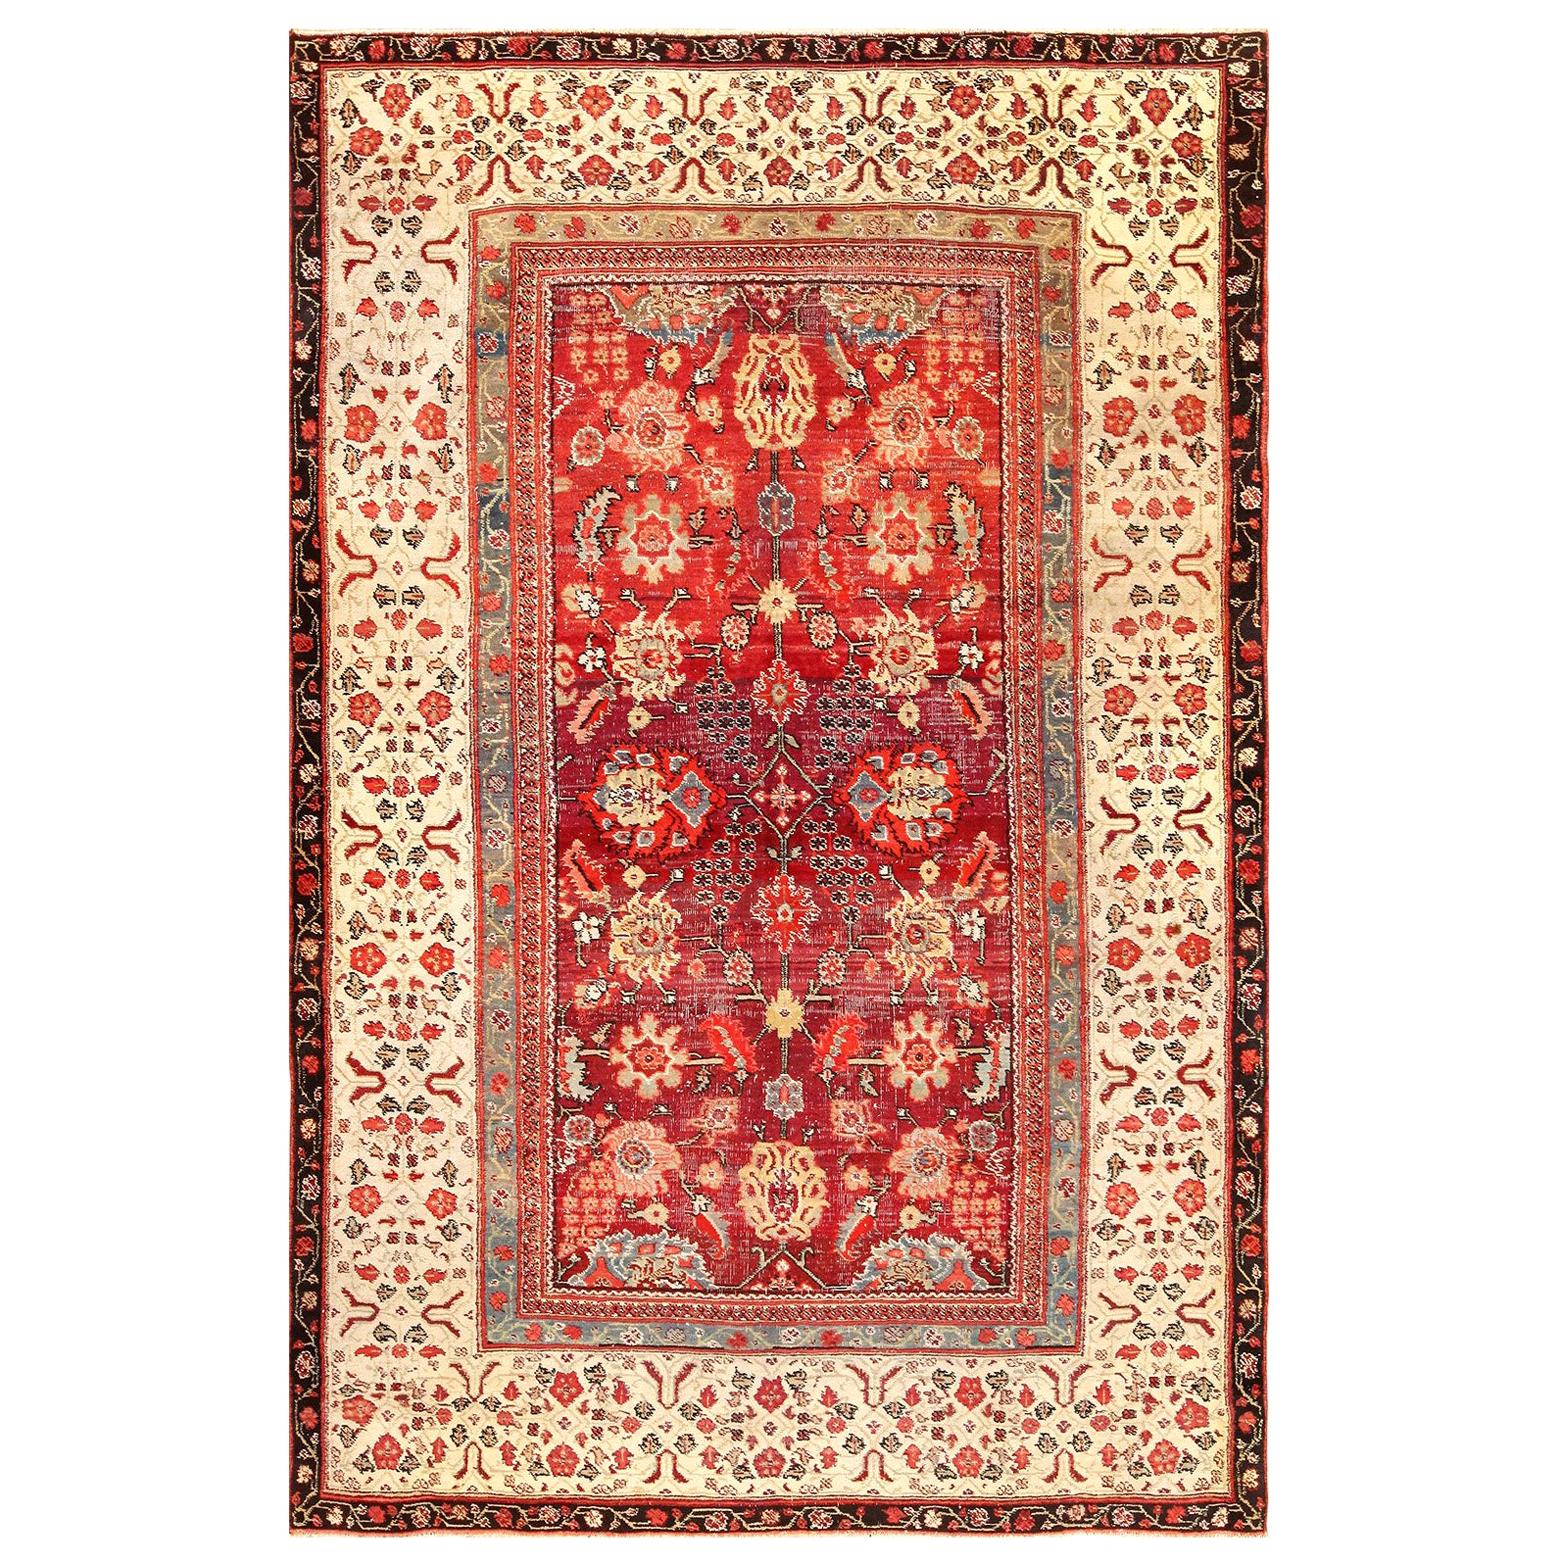 Nazmiyal Collection Antiker indischer Agra-Teppich. Größe: 6 Fuß x 8 Fuß 9 Zoll